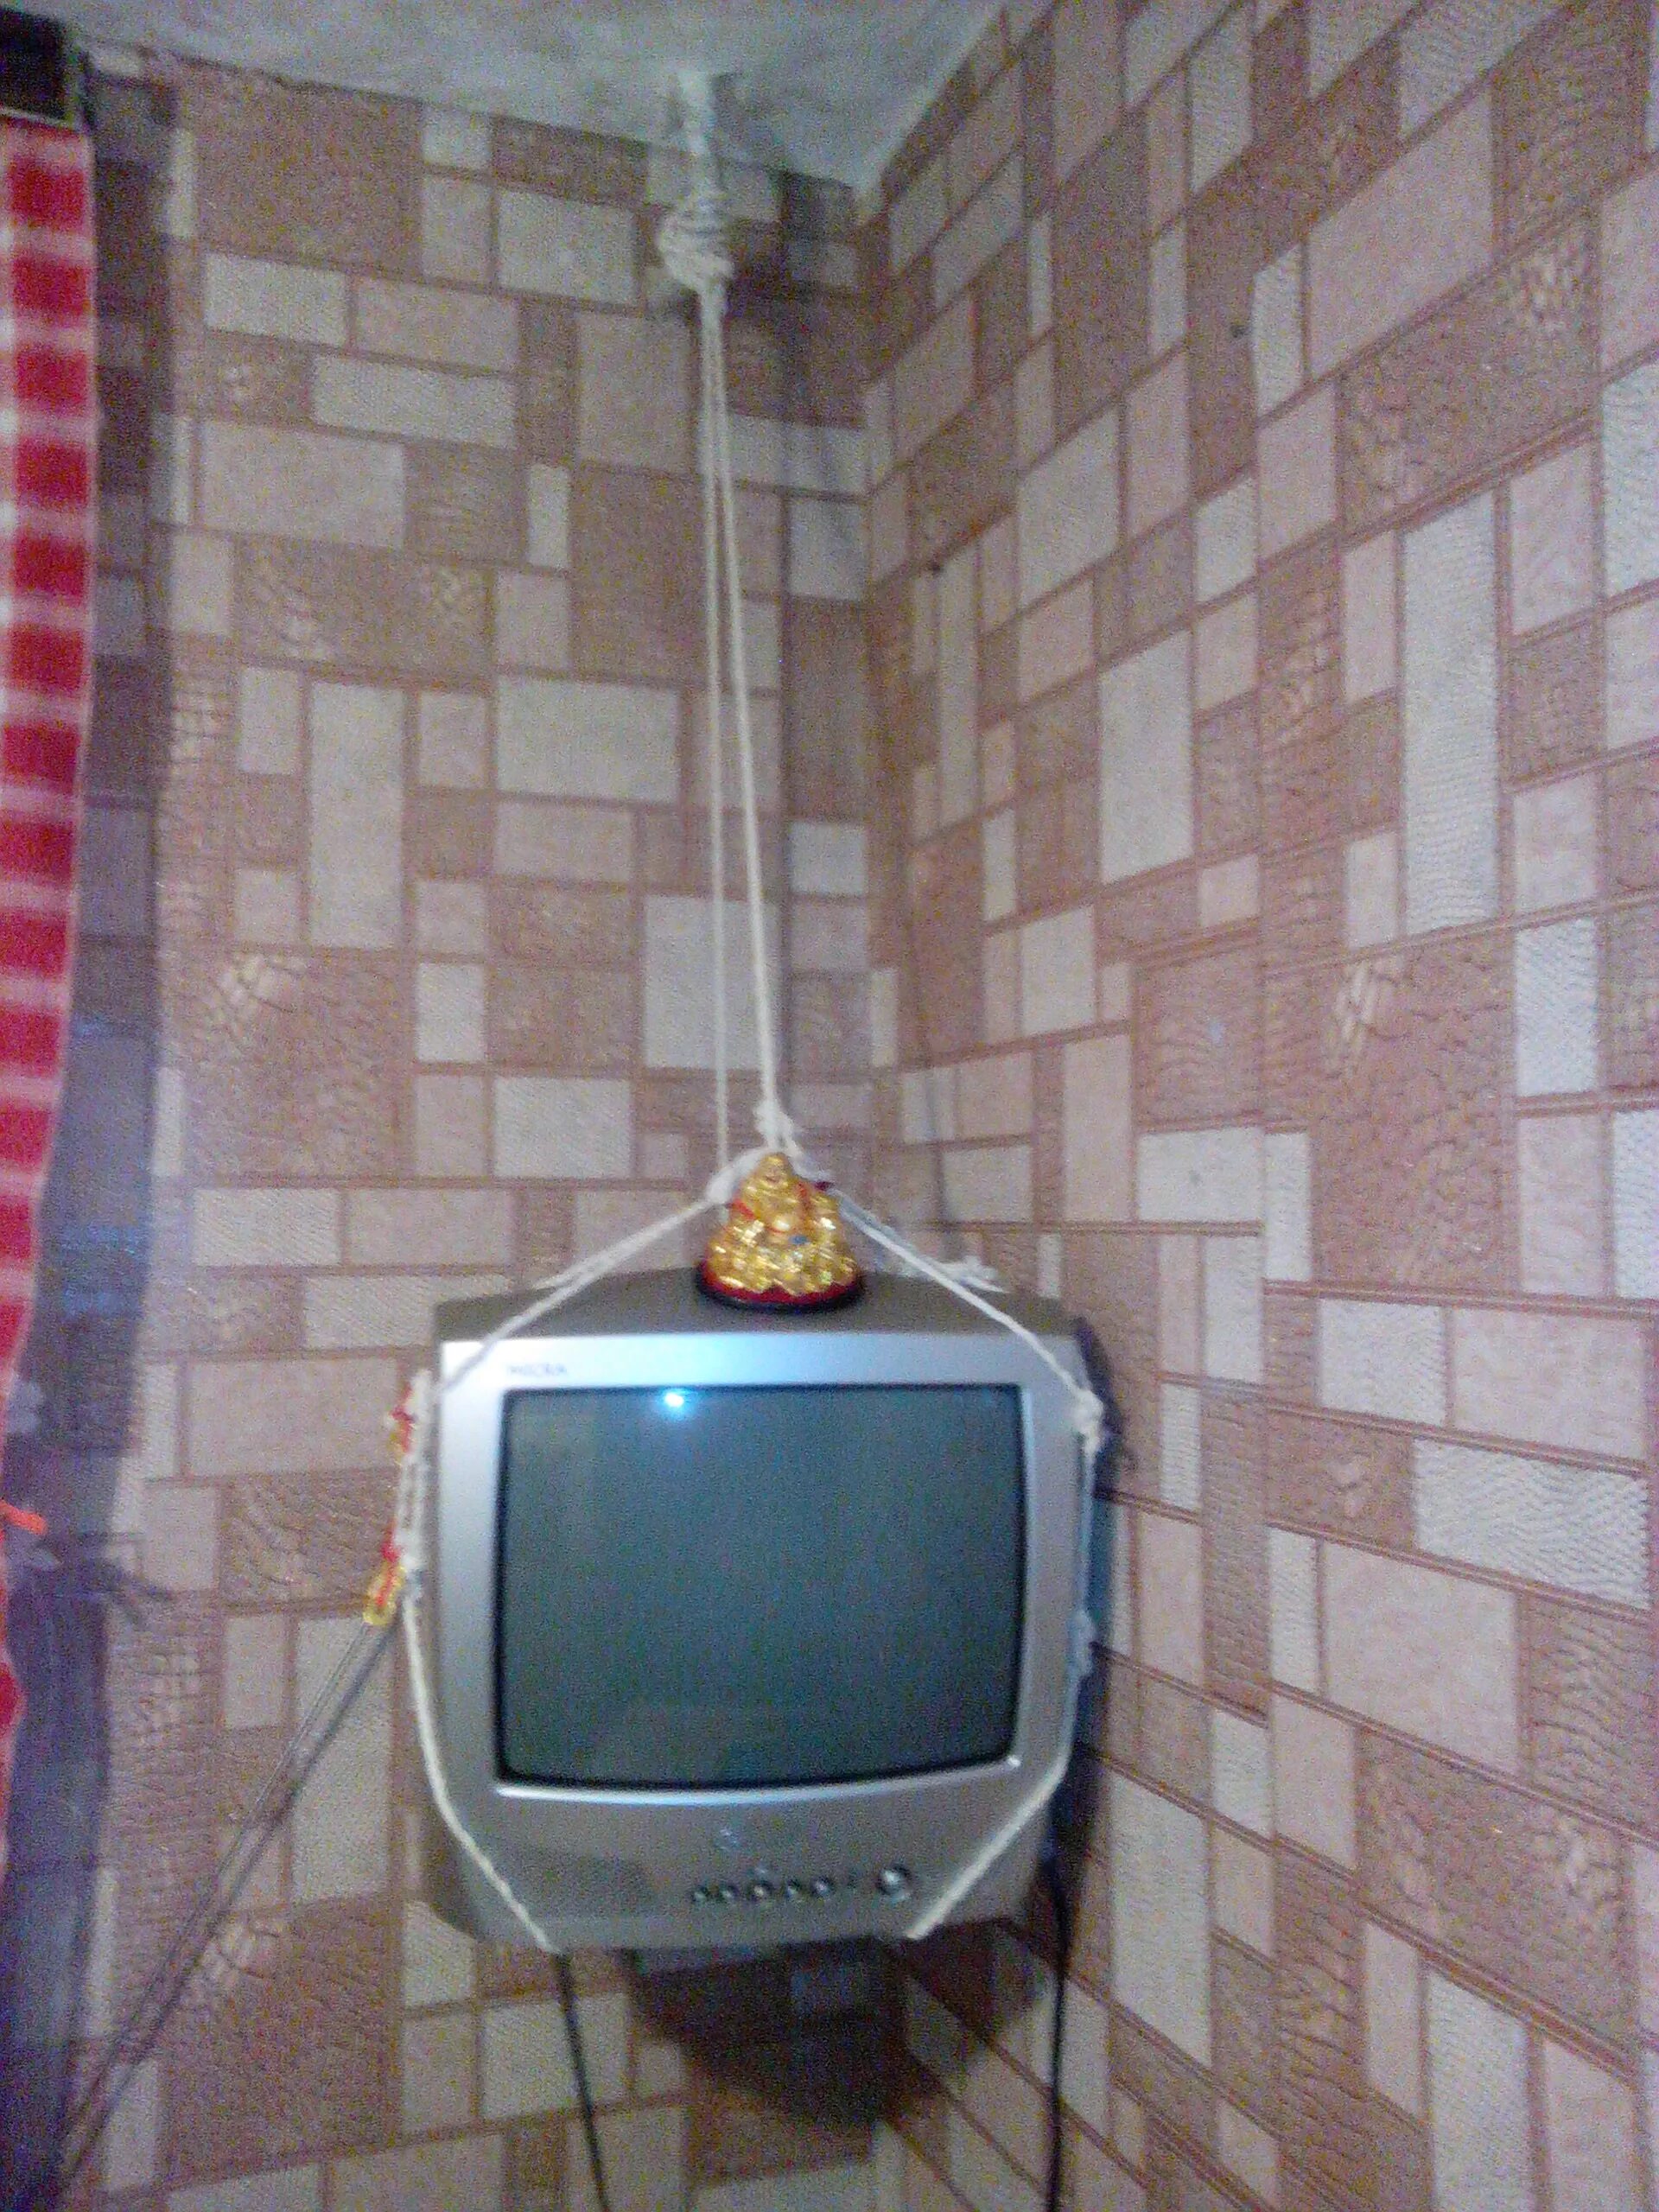 Самый простой телевизор. Маленький телевизор на кухню. Маленький телевизор на стену. Подвешивание телевизора на кухне. Старый маленький телевизор.